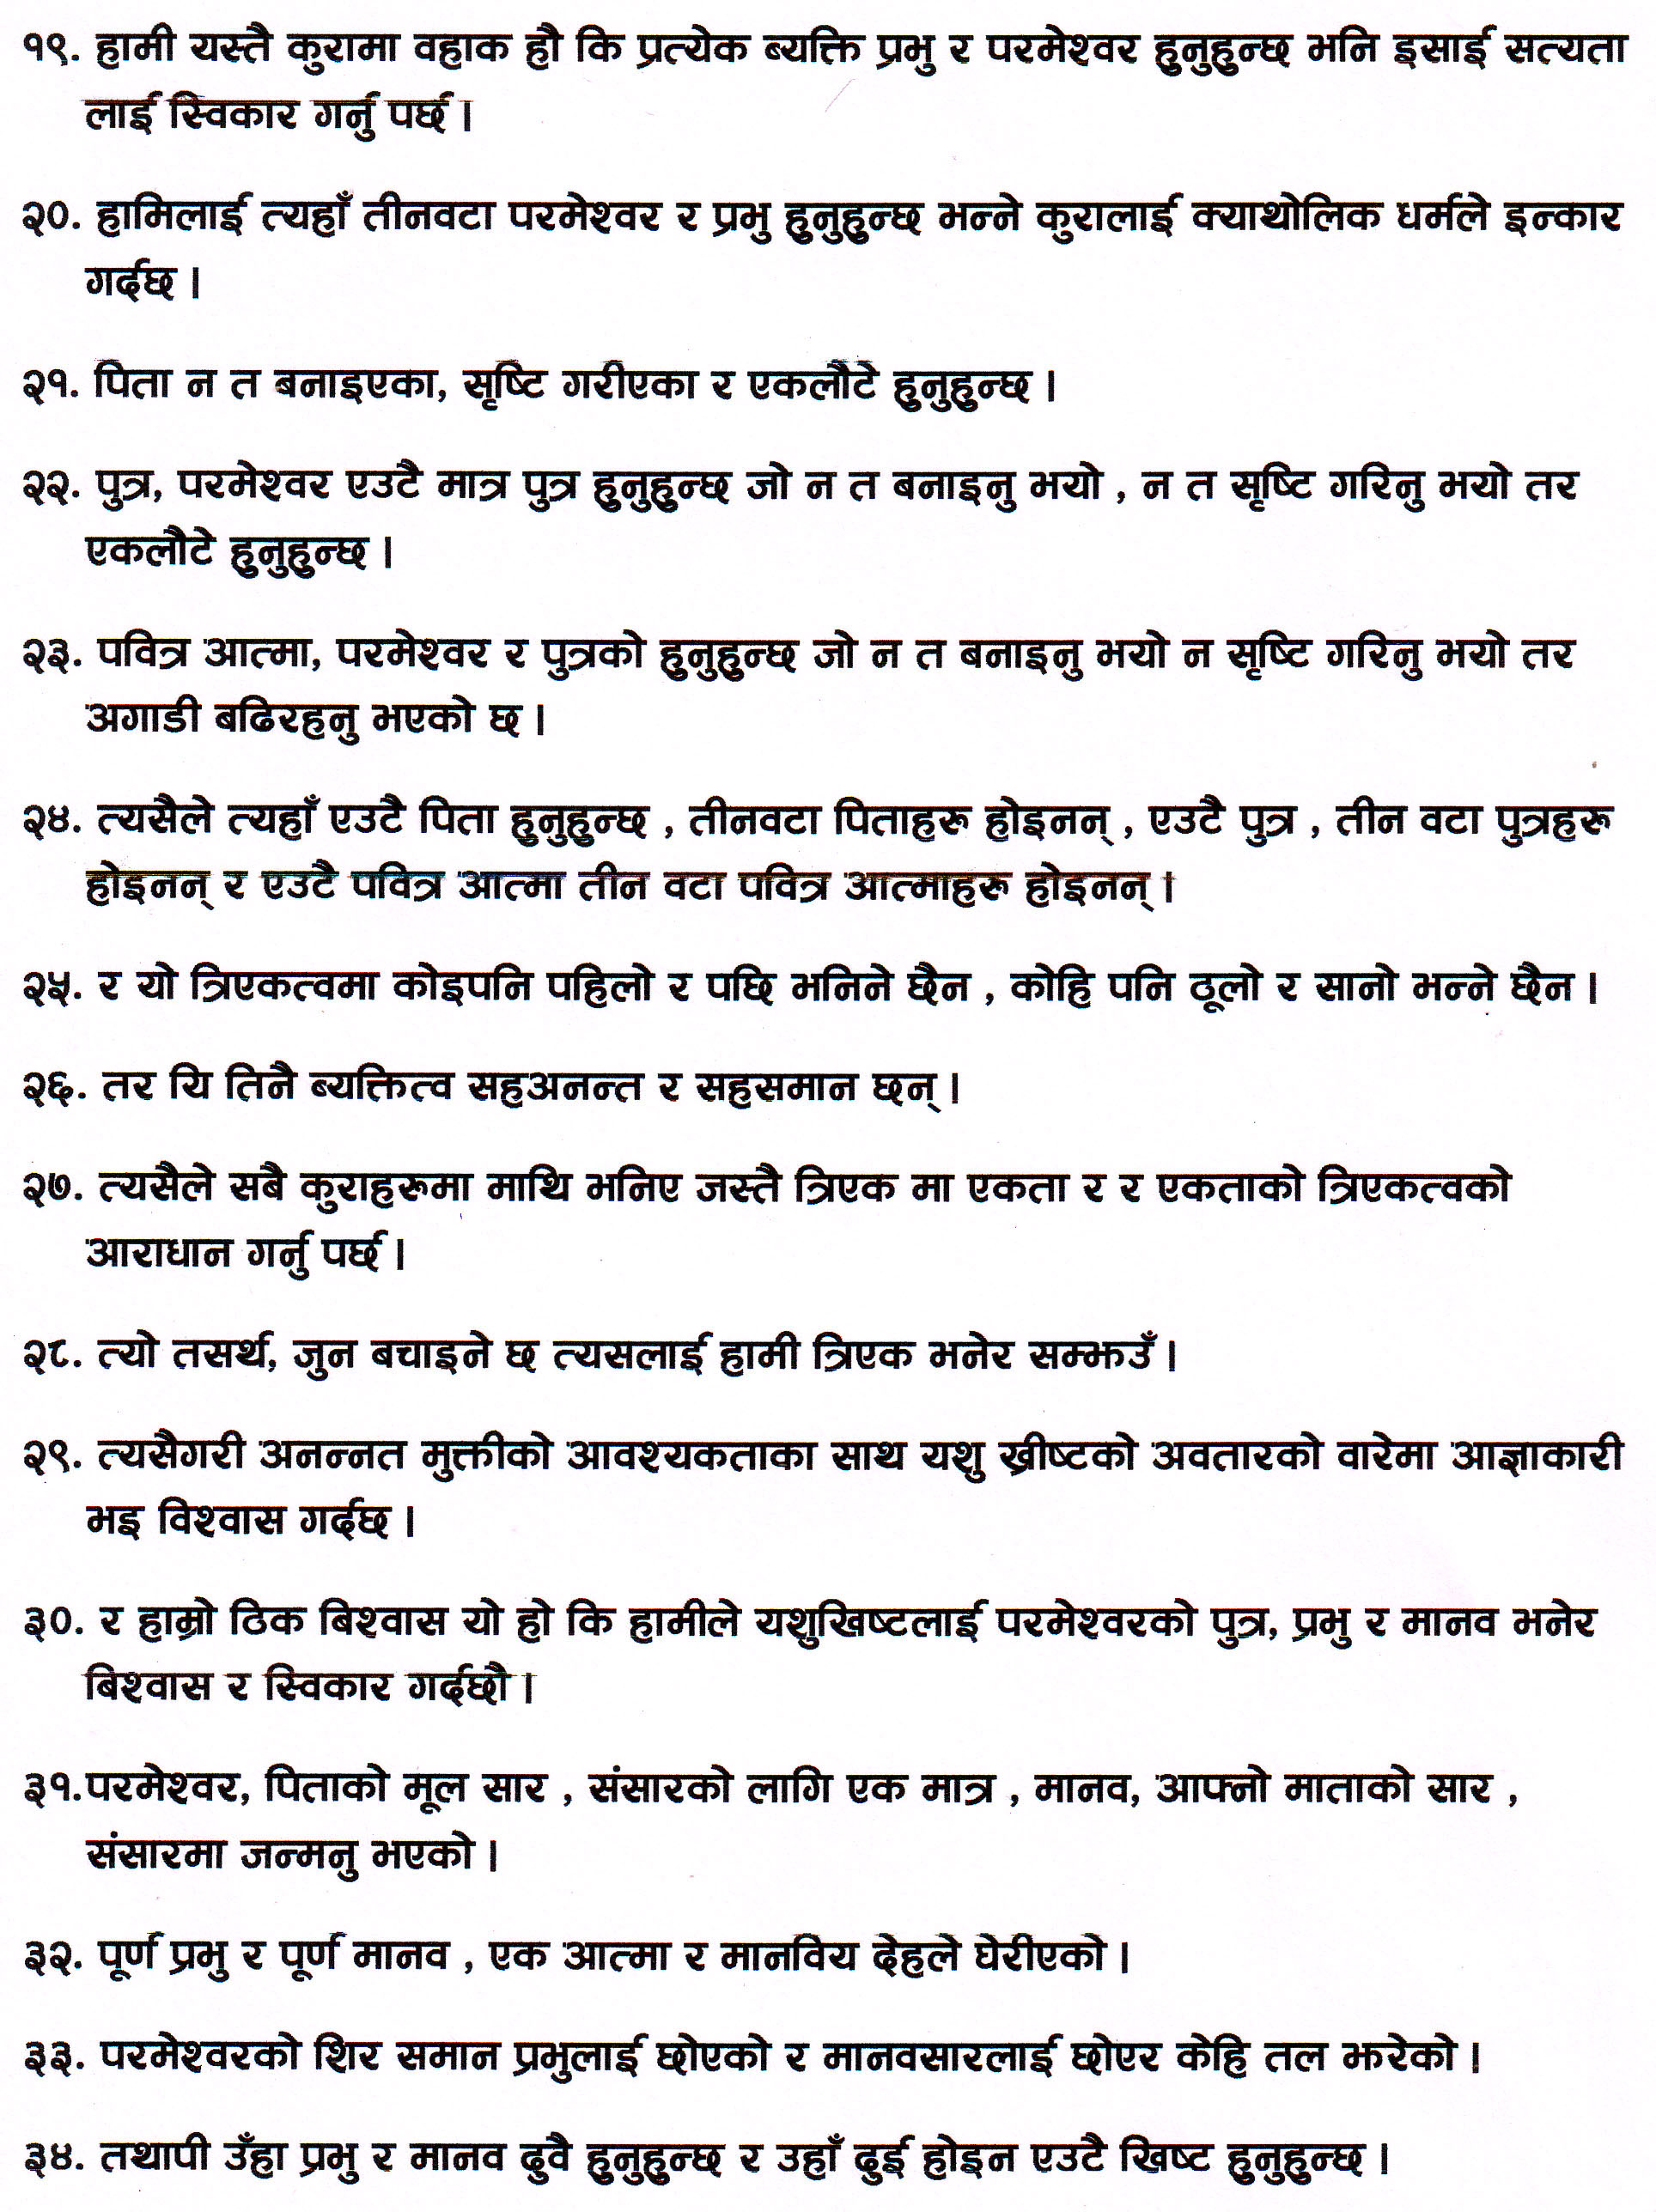 Nepali Athanasian Creed part 2